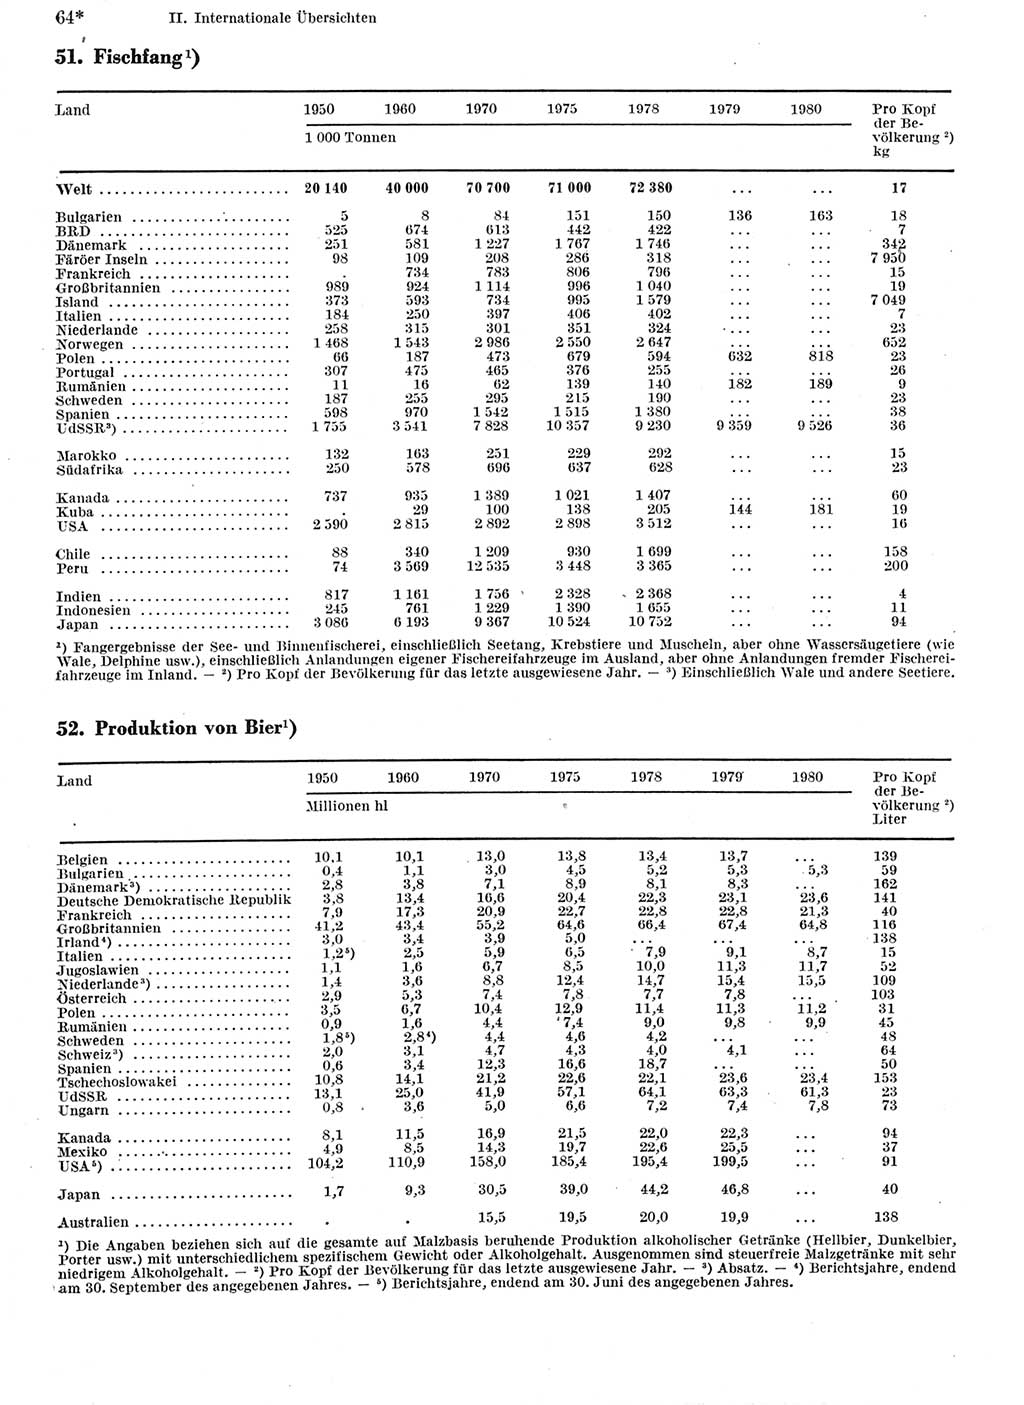 Statistisches Jahrbuch der Deutschen Demokratischen Republik (DDR) 1982, Seite 64 (Stat. Jb. DDR 1982, S. 64)